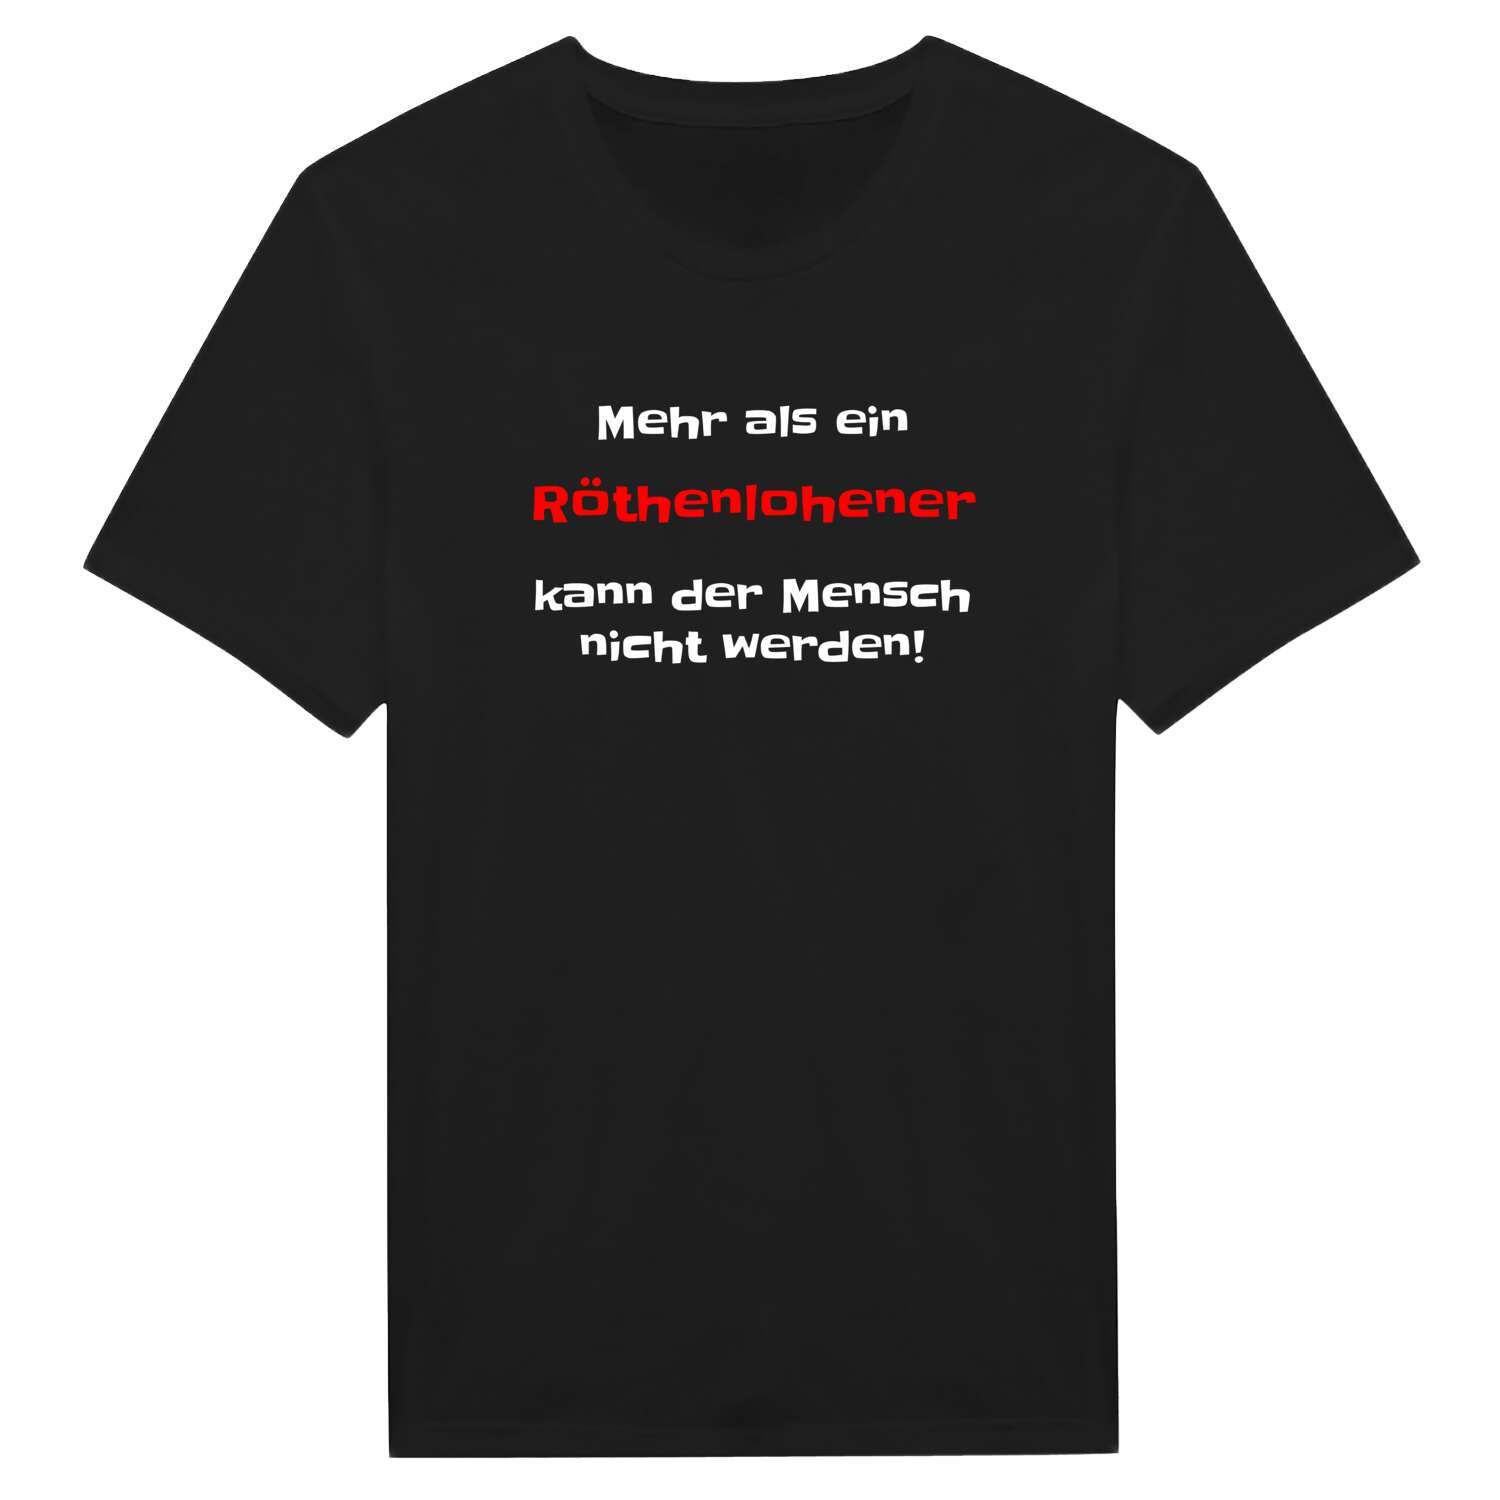 Röthenlohe T-Shirt »Mehr als ein«